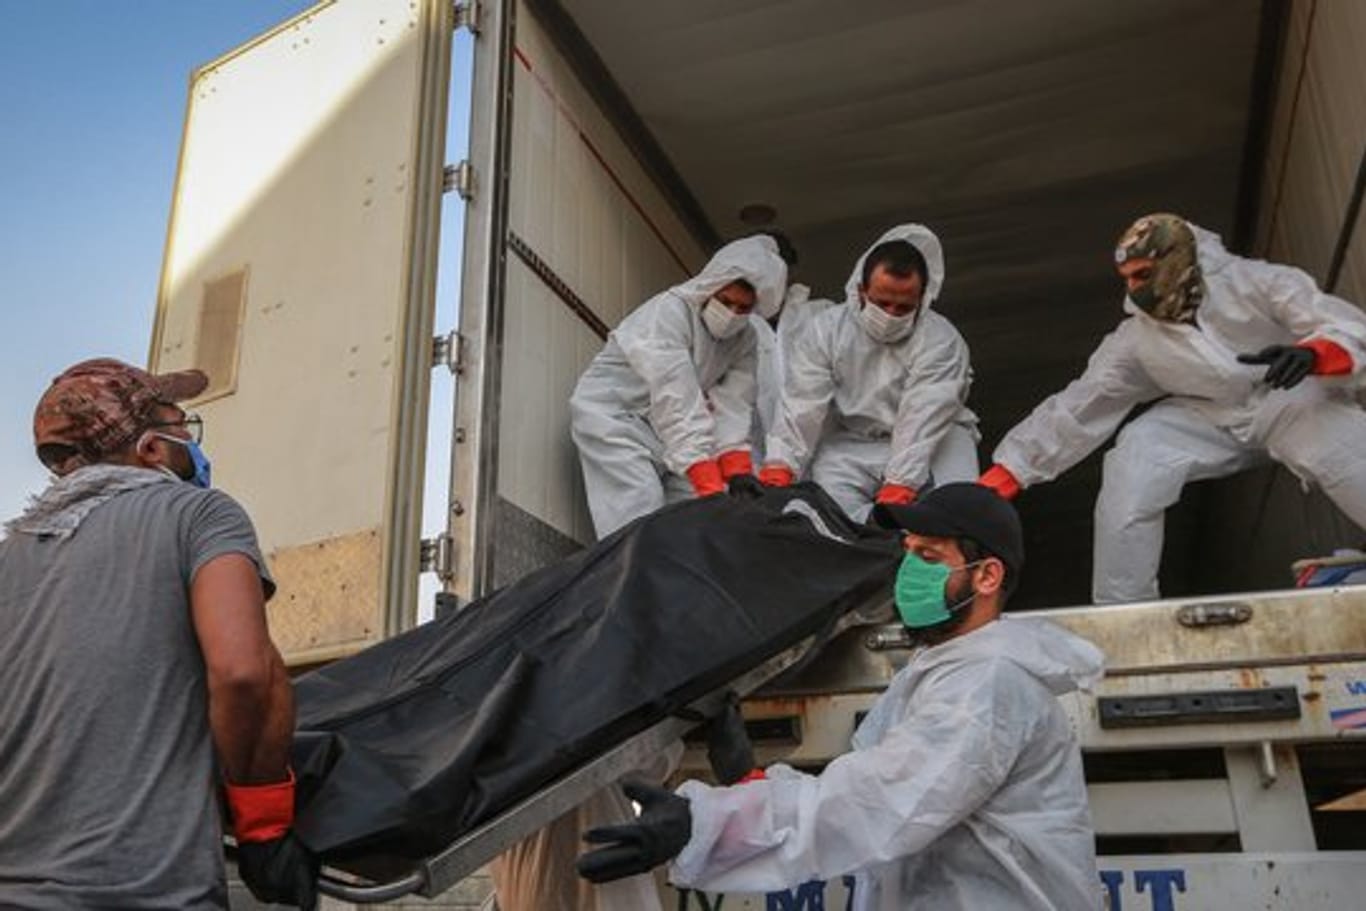 Arbeiter in Schutzkleidung beladen in Bagdad einen Kühlwagen mit Leichen von Menschen, die am Coronavirus gestorben sind.